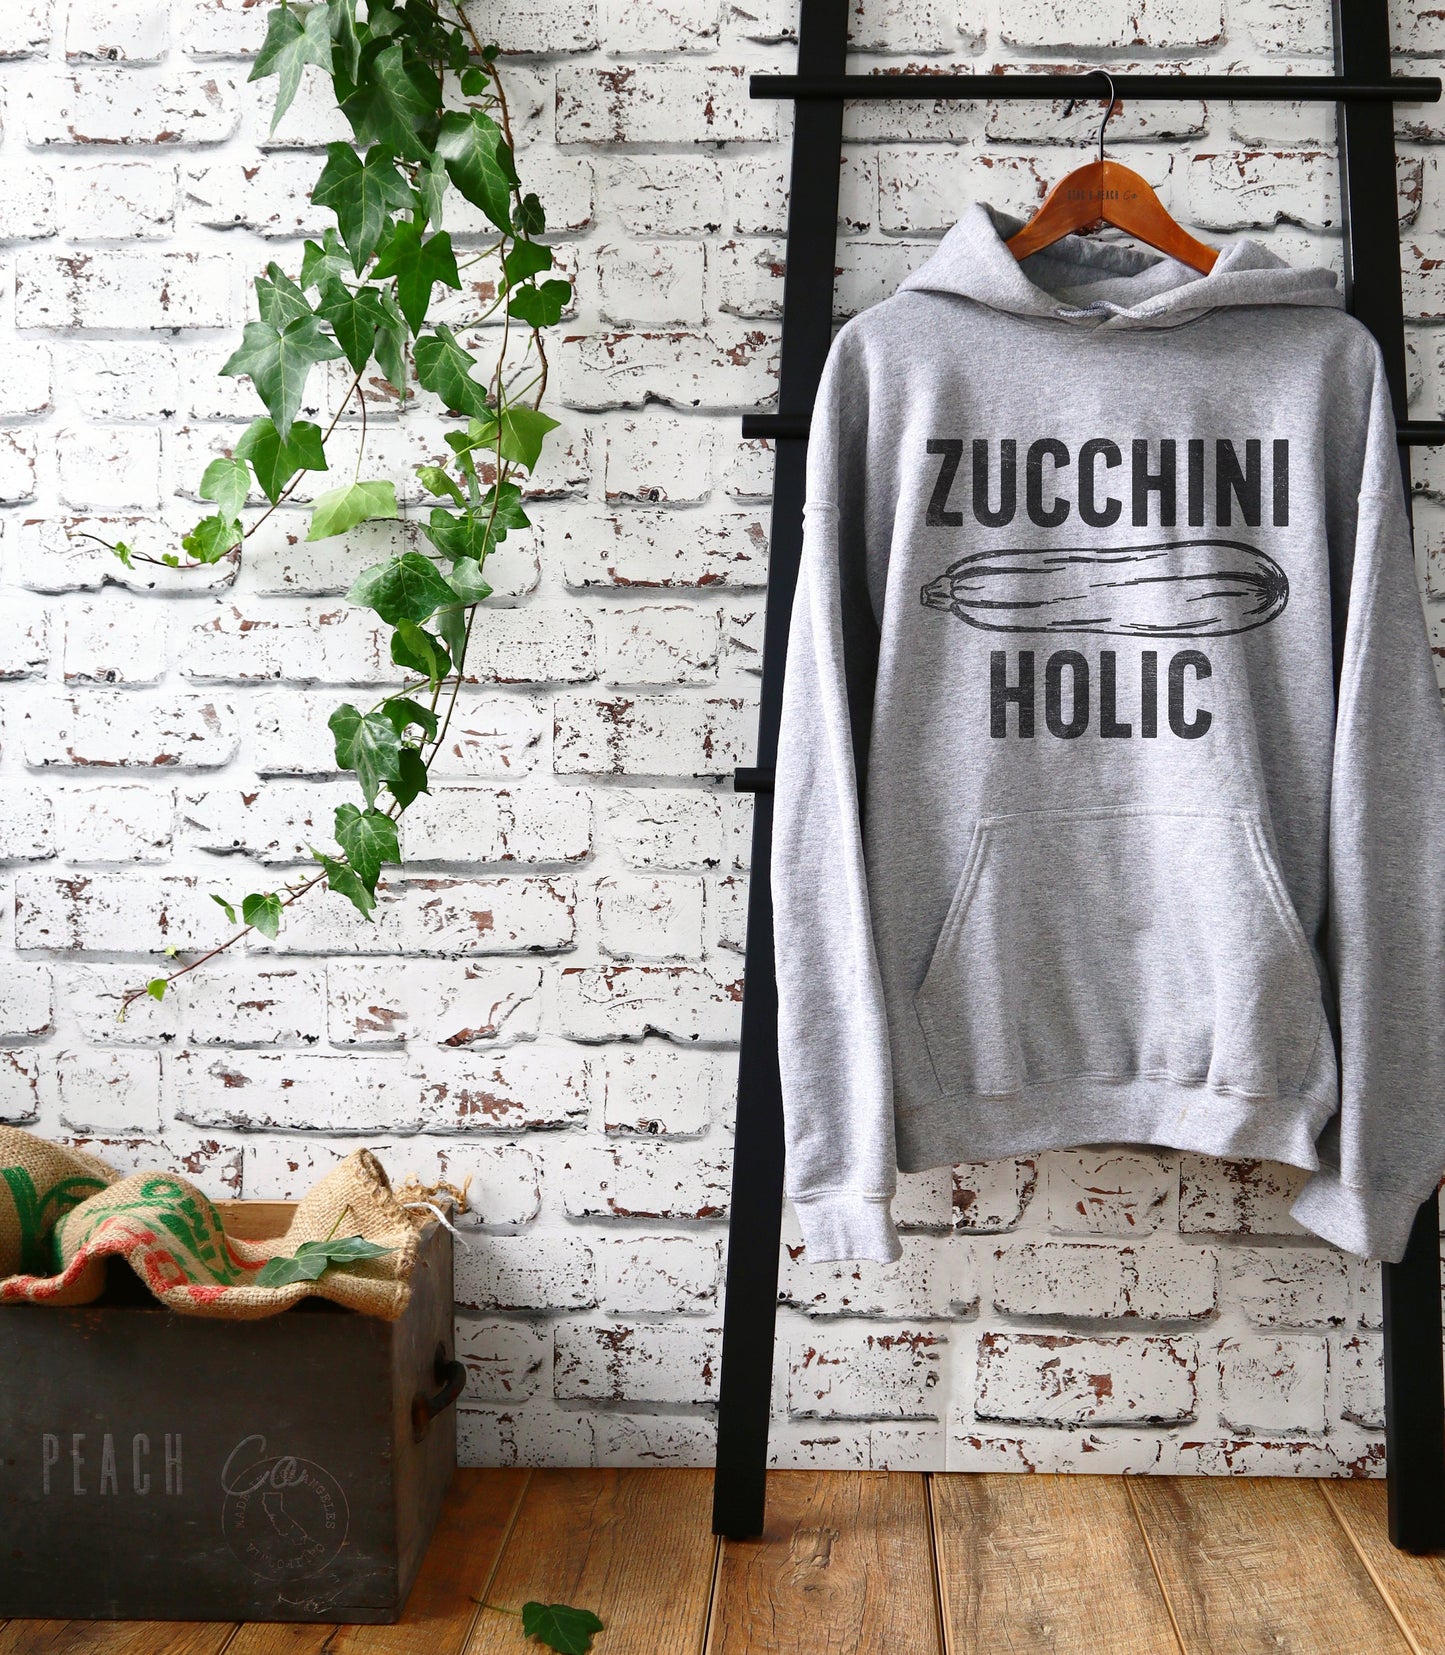 Zucchini Holic Hoodie - Vegan Shirt, Vegetarian Shirt, Vegetable TShirt, Vegan Gift, Vegetarian Gift, Gardening Shirt